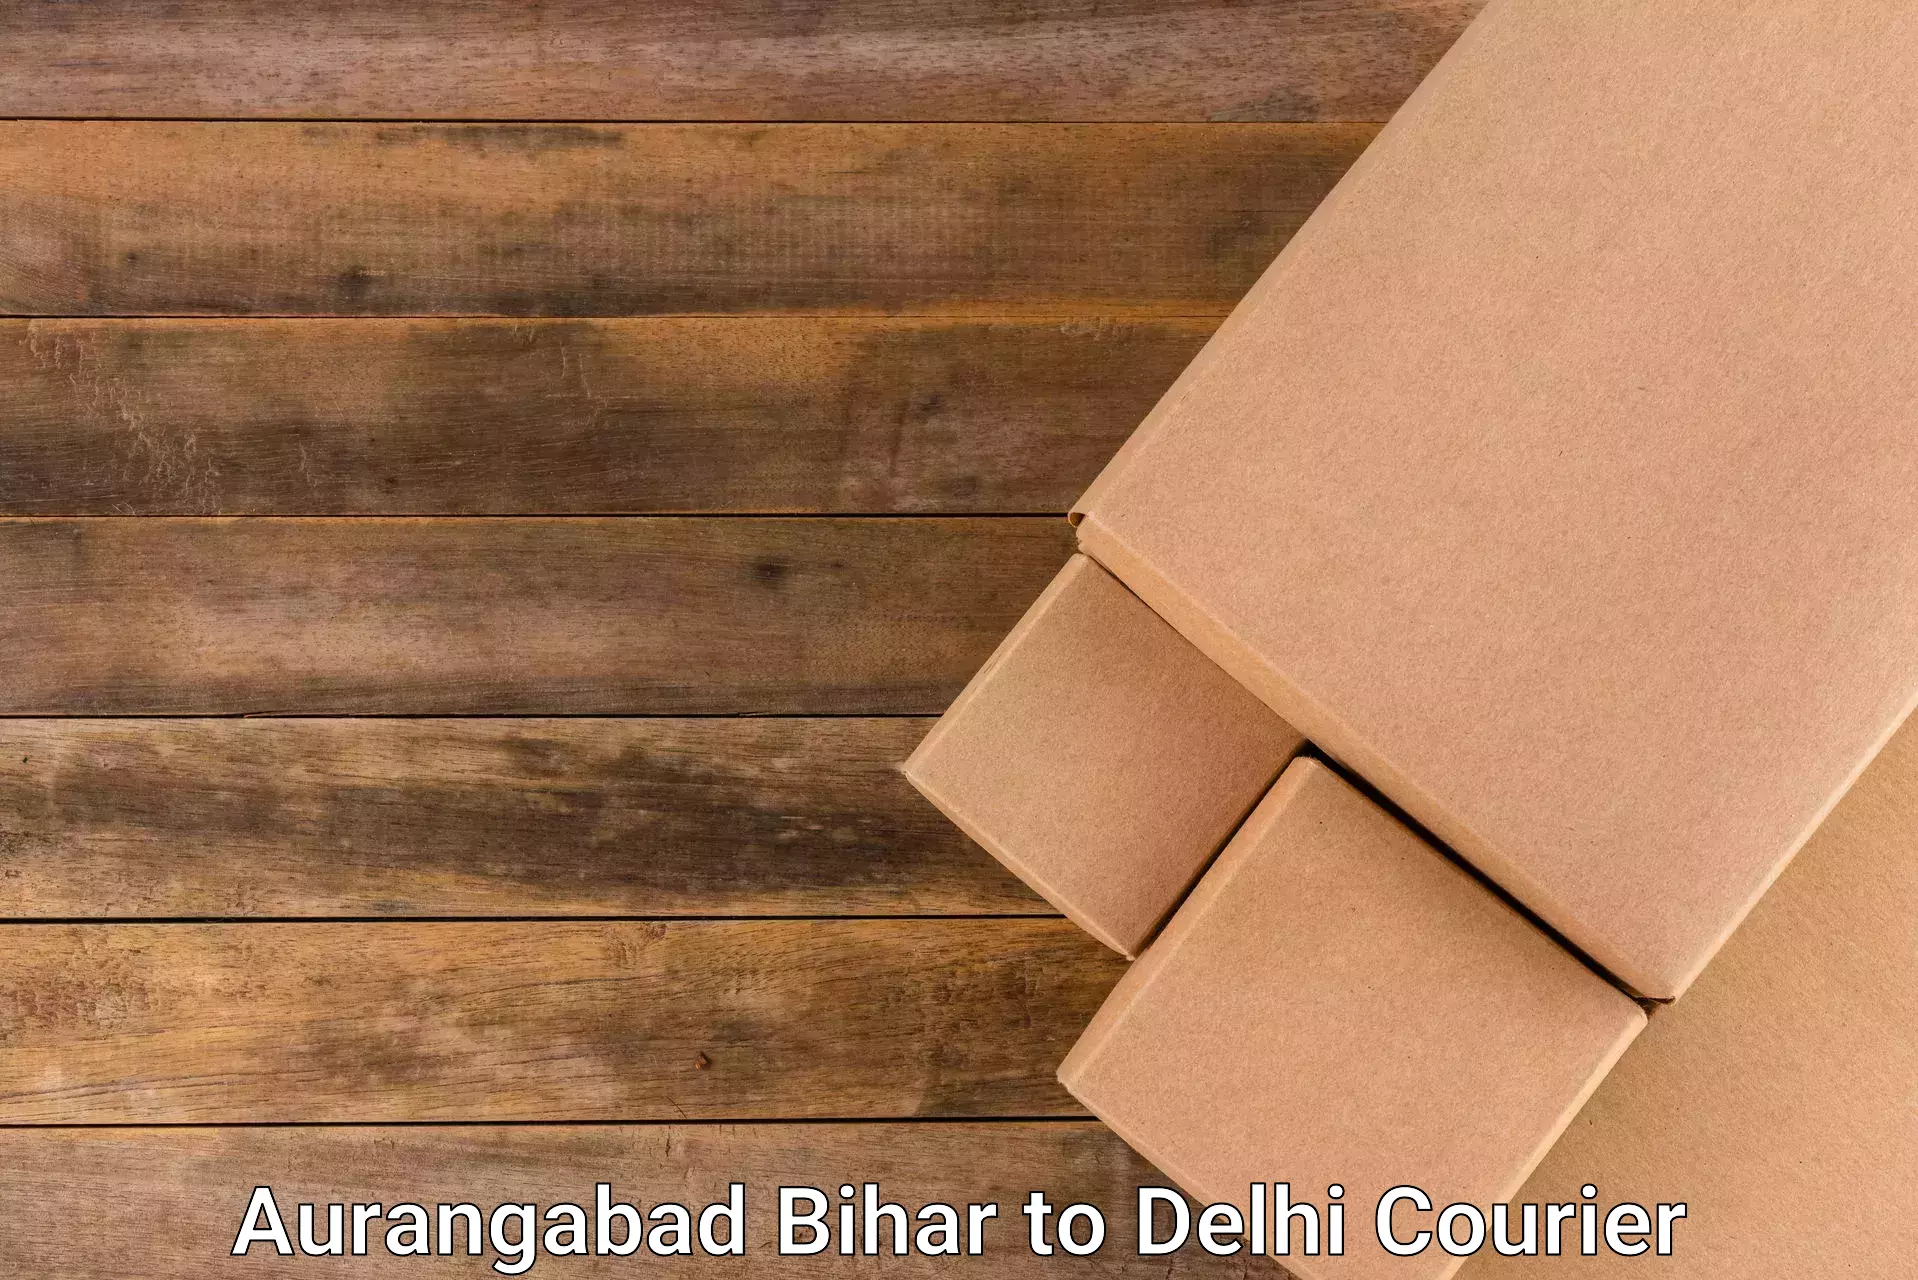 Emergency parcel delivery Aurangabad Bihar to NIT Delhi